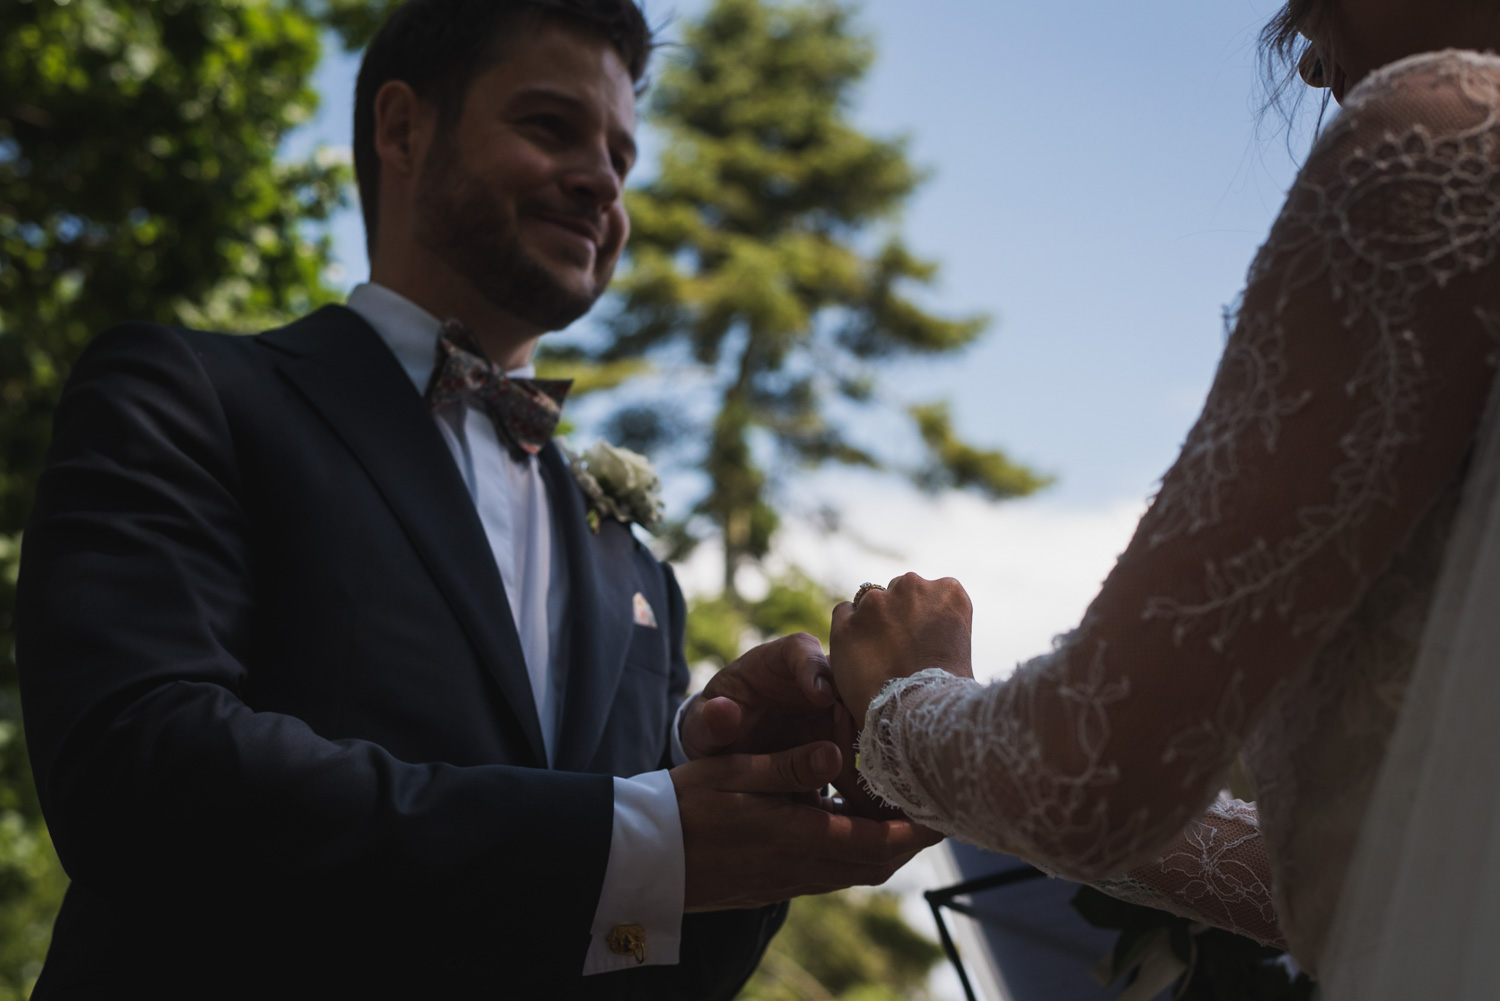 Outdoor wedding- Rings, outdoor wedding essex